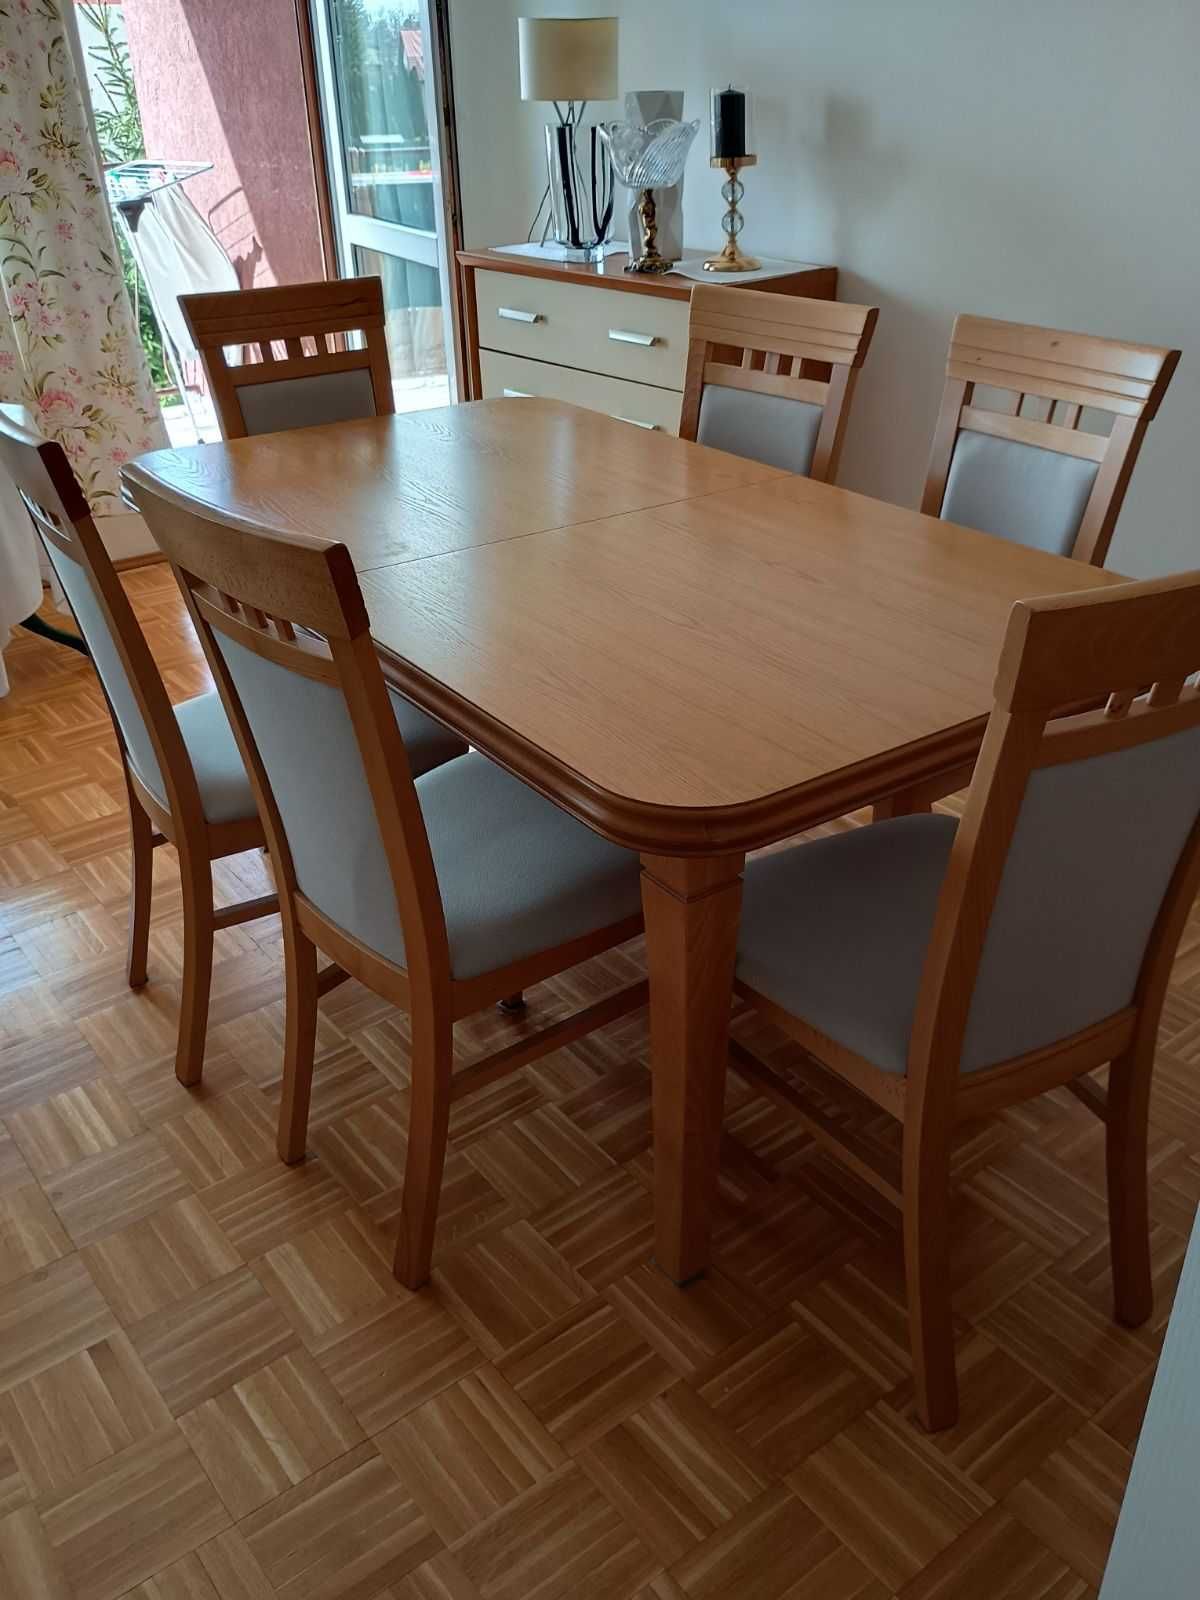 Piękny zestaw stół + komplet krzeseł